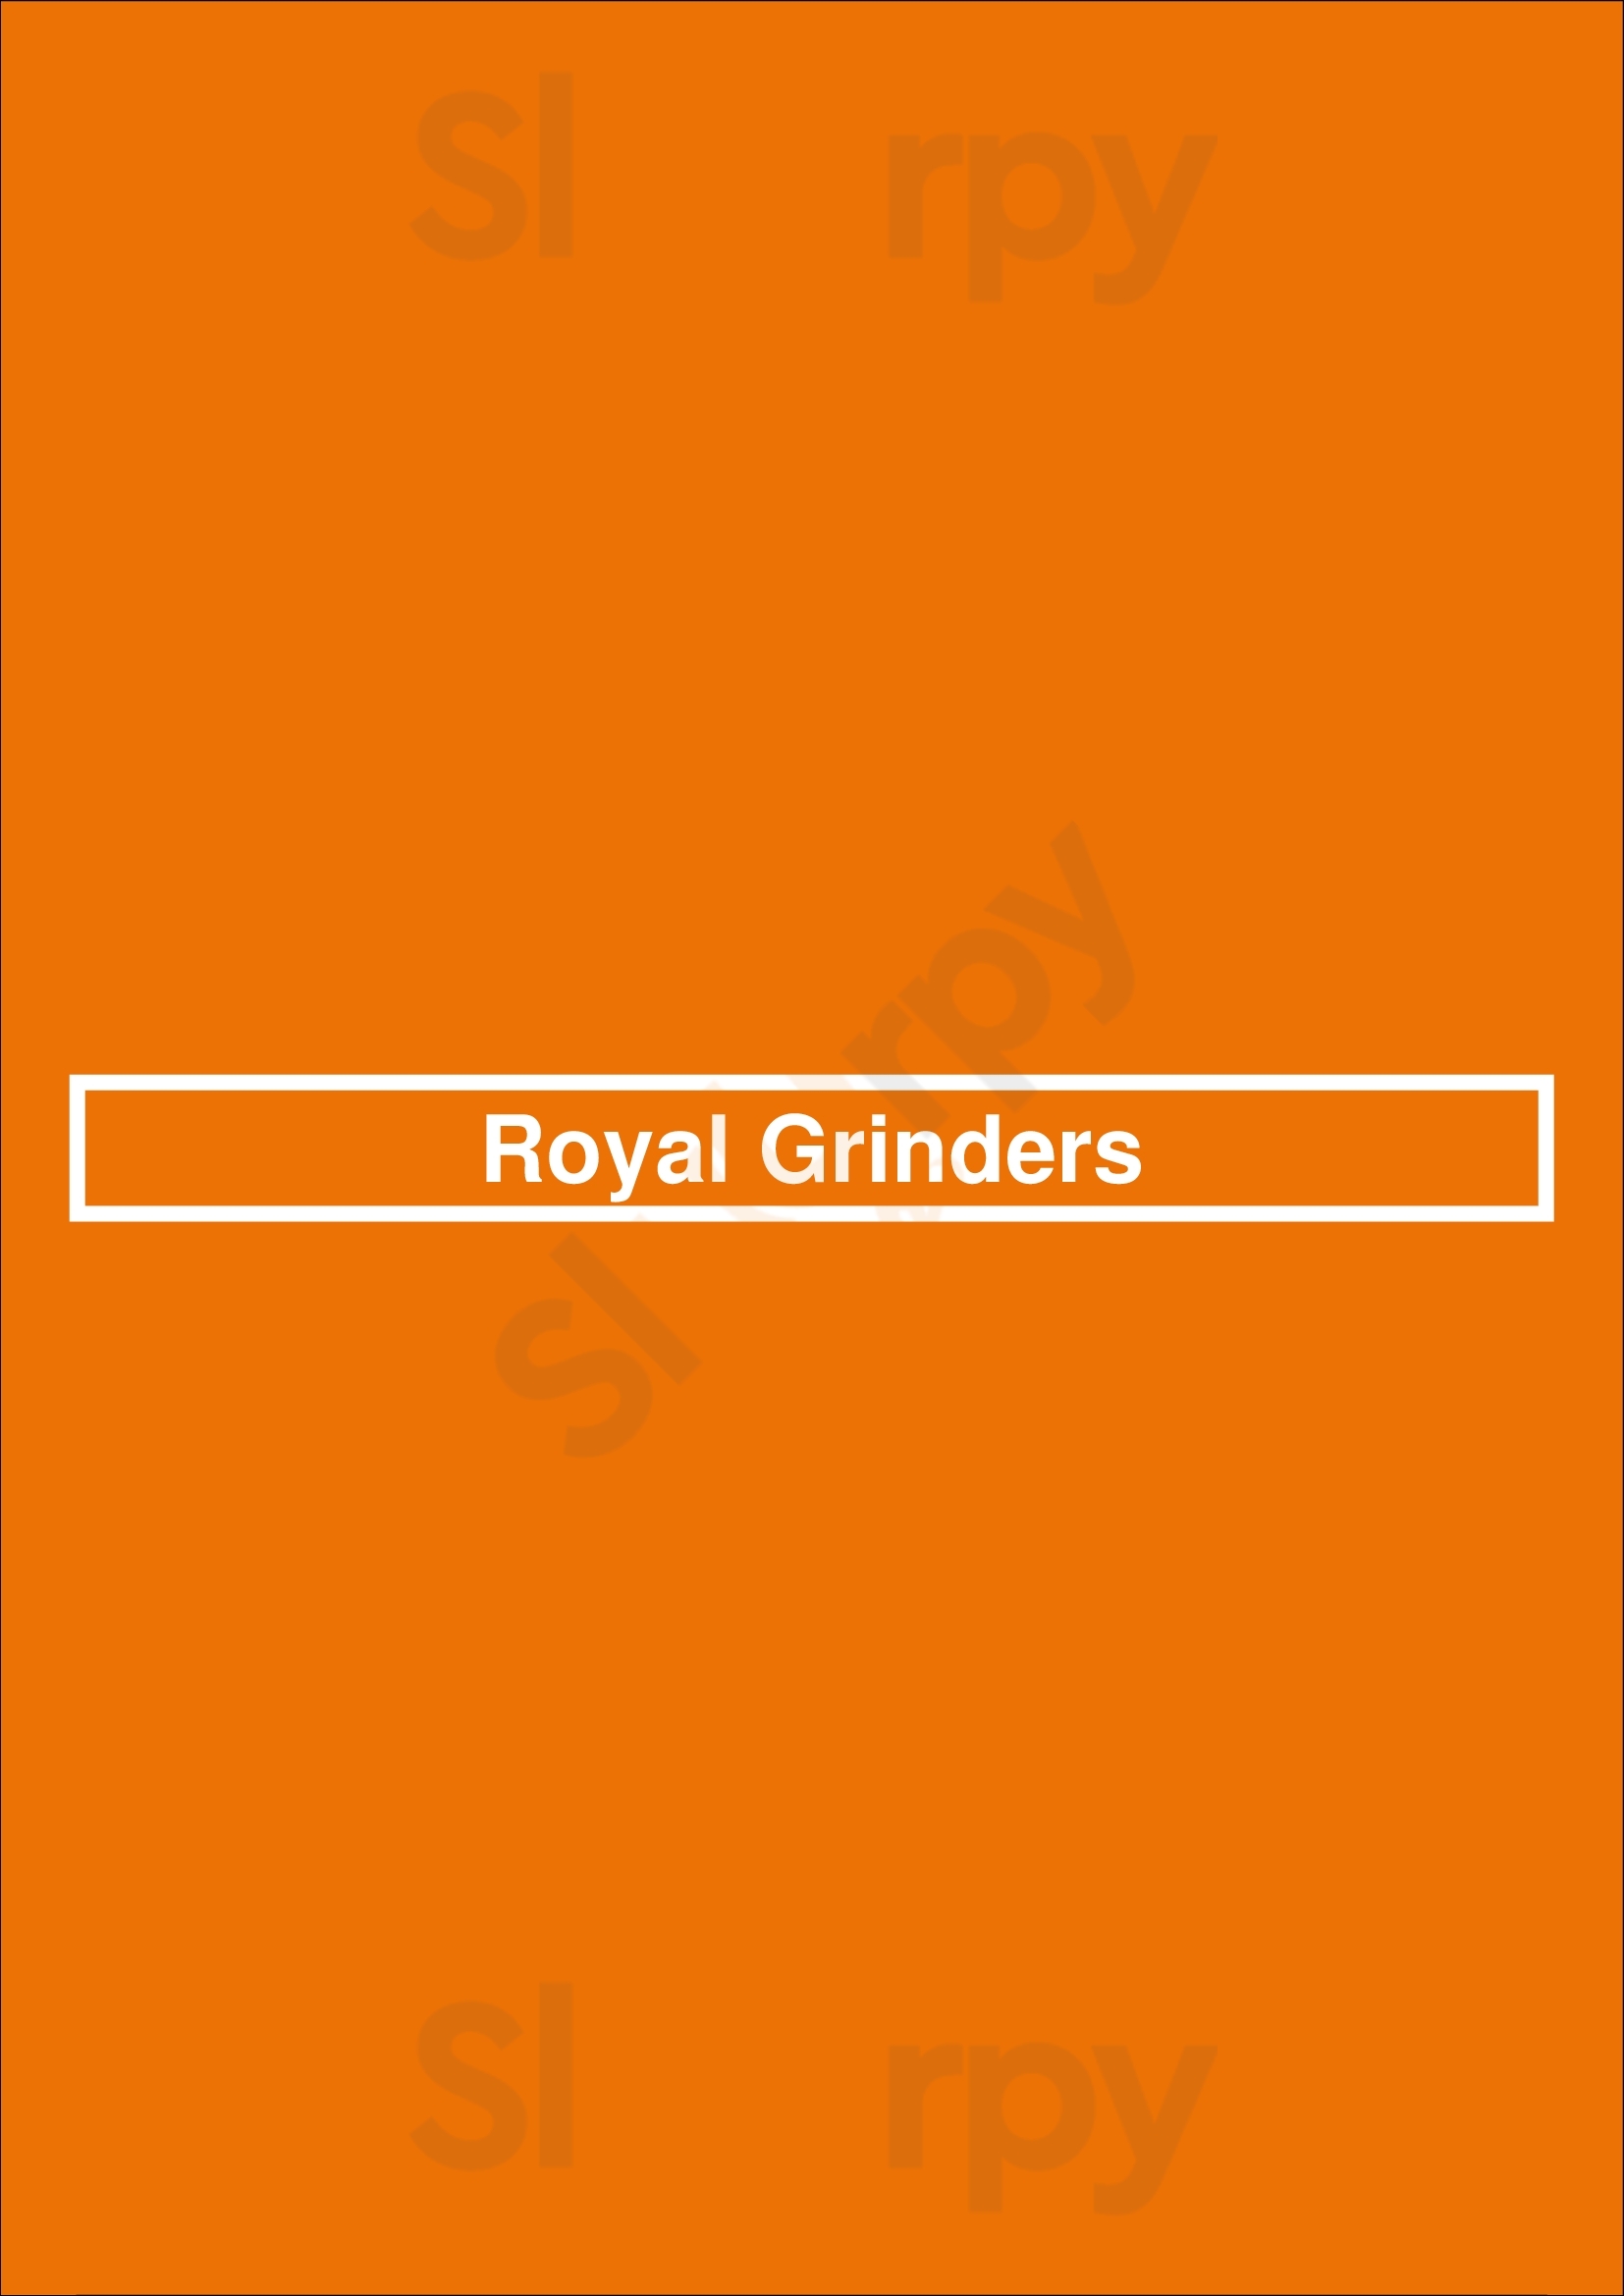 Royal Grinders Seattle Menu - 1